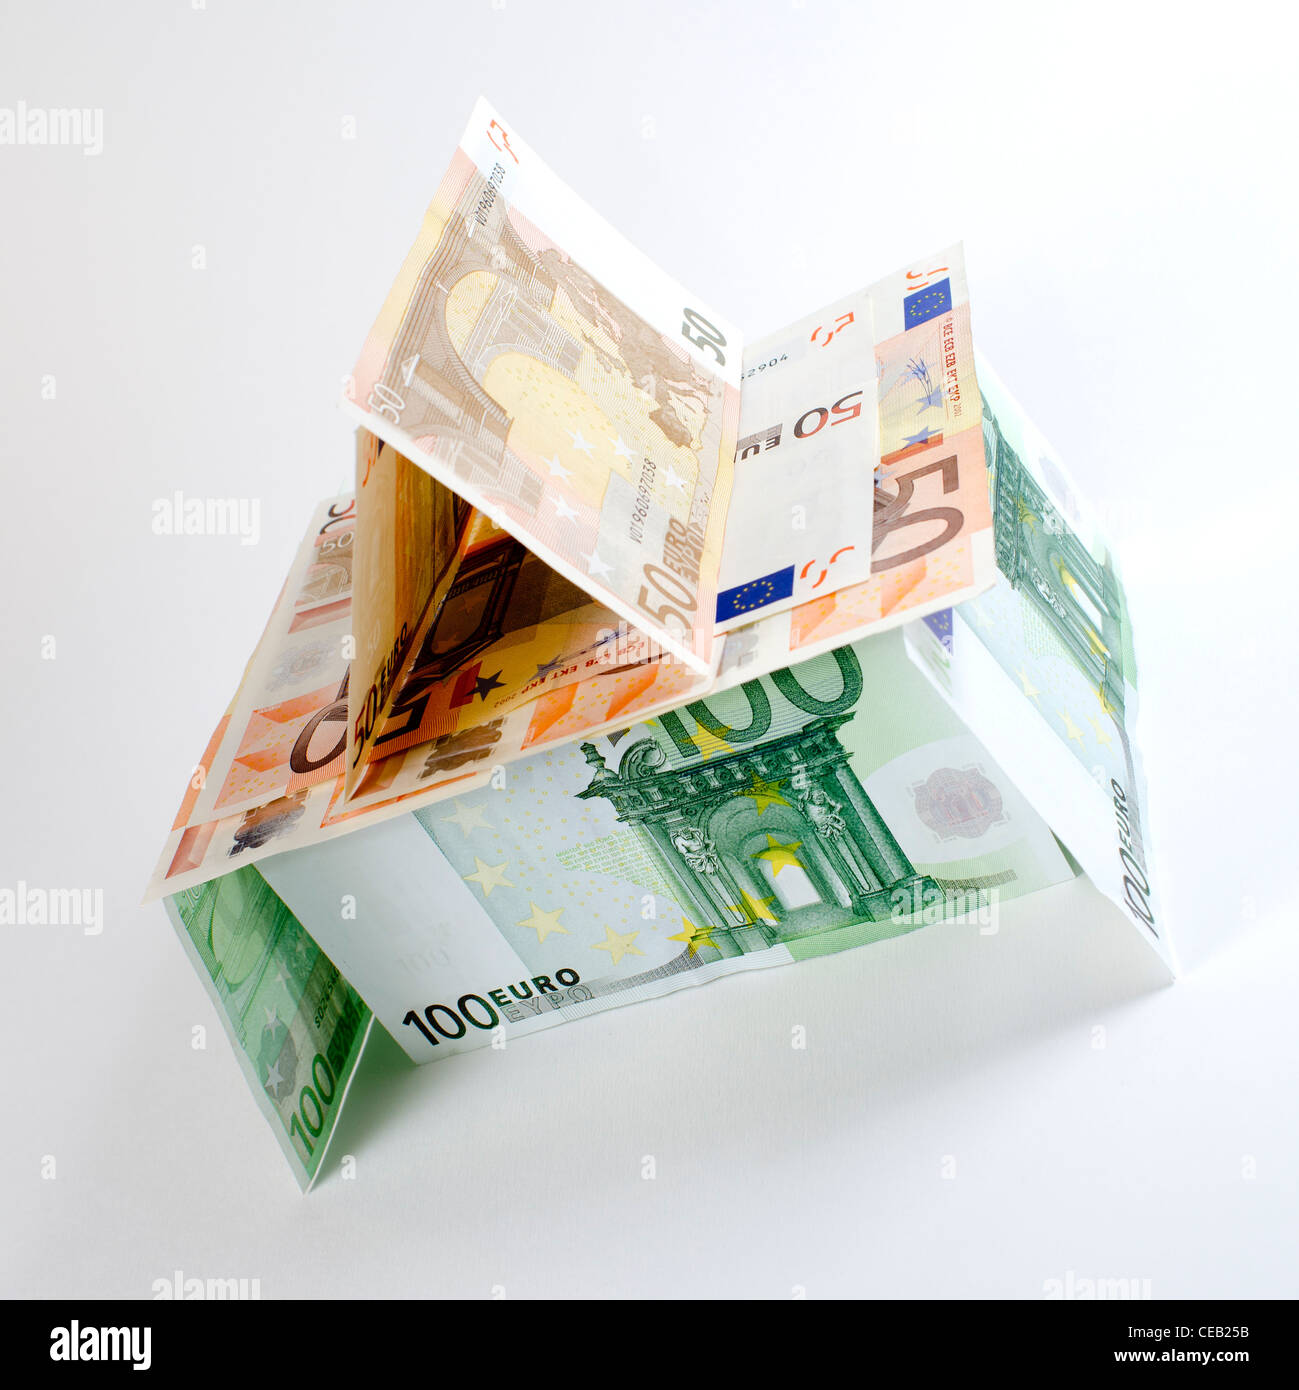 Haus aus der Euro-Währung, die Darstellung der wirtschaftlichen Krise und der Fragilität in der Eurozone im Jahr 2012. Stockfoto